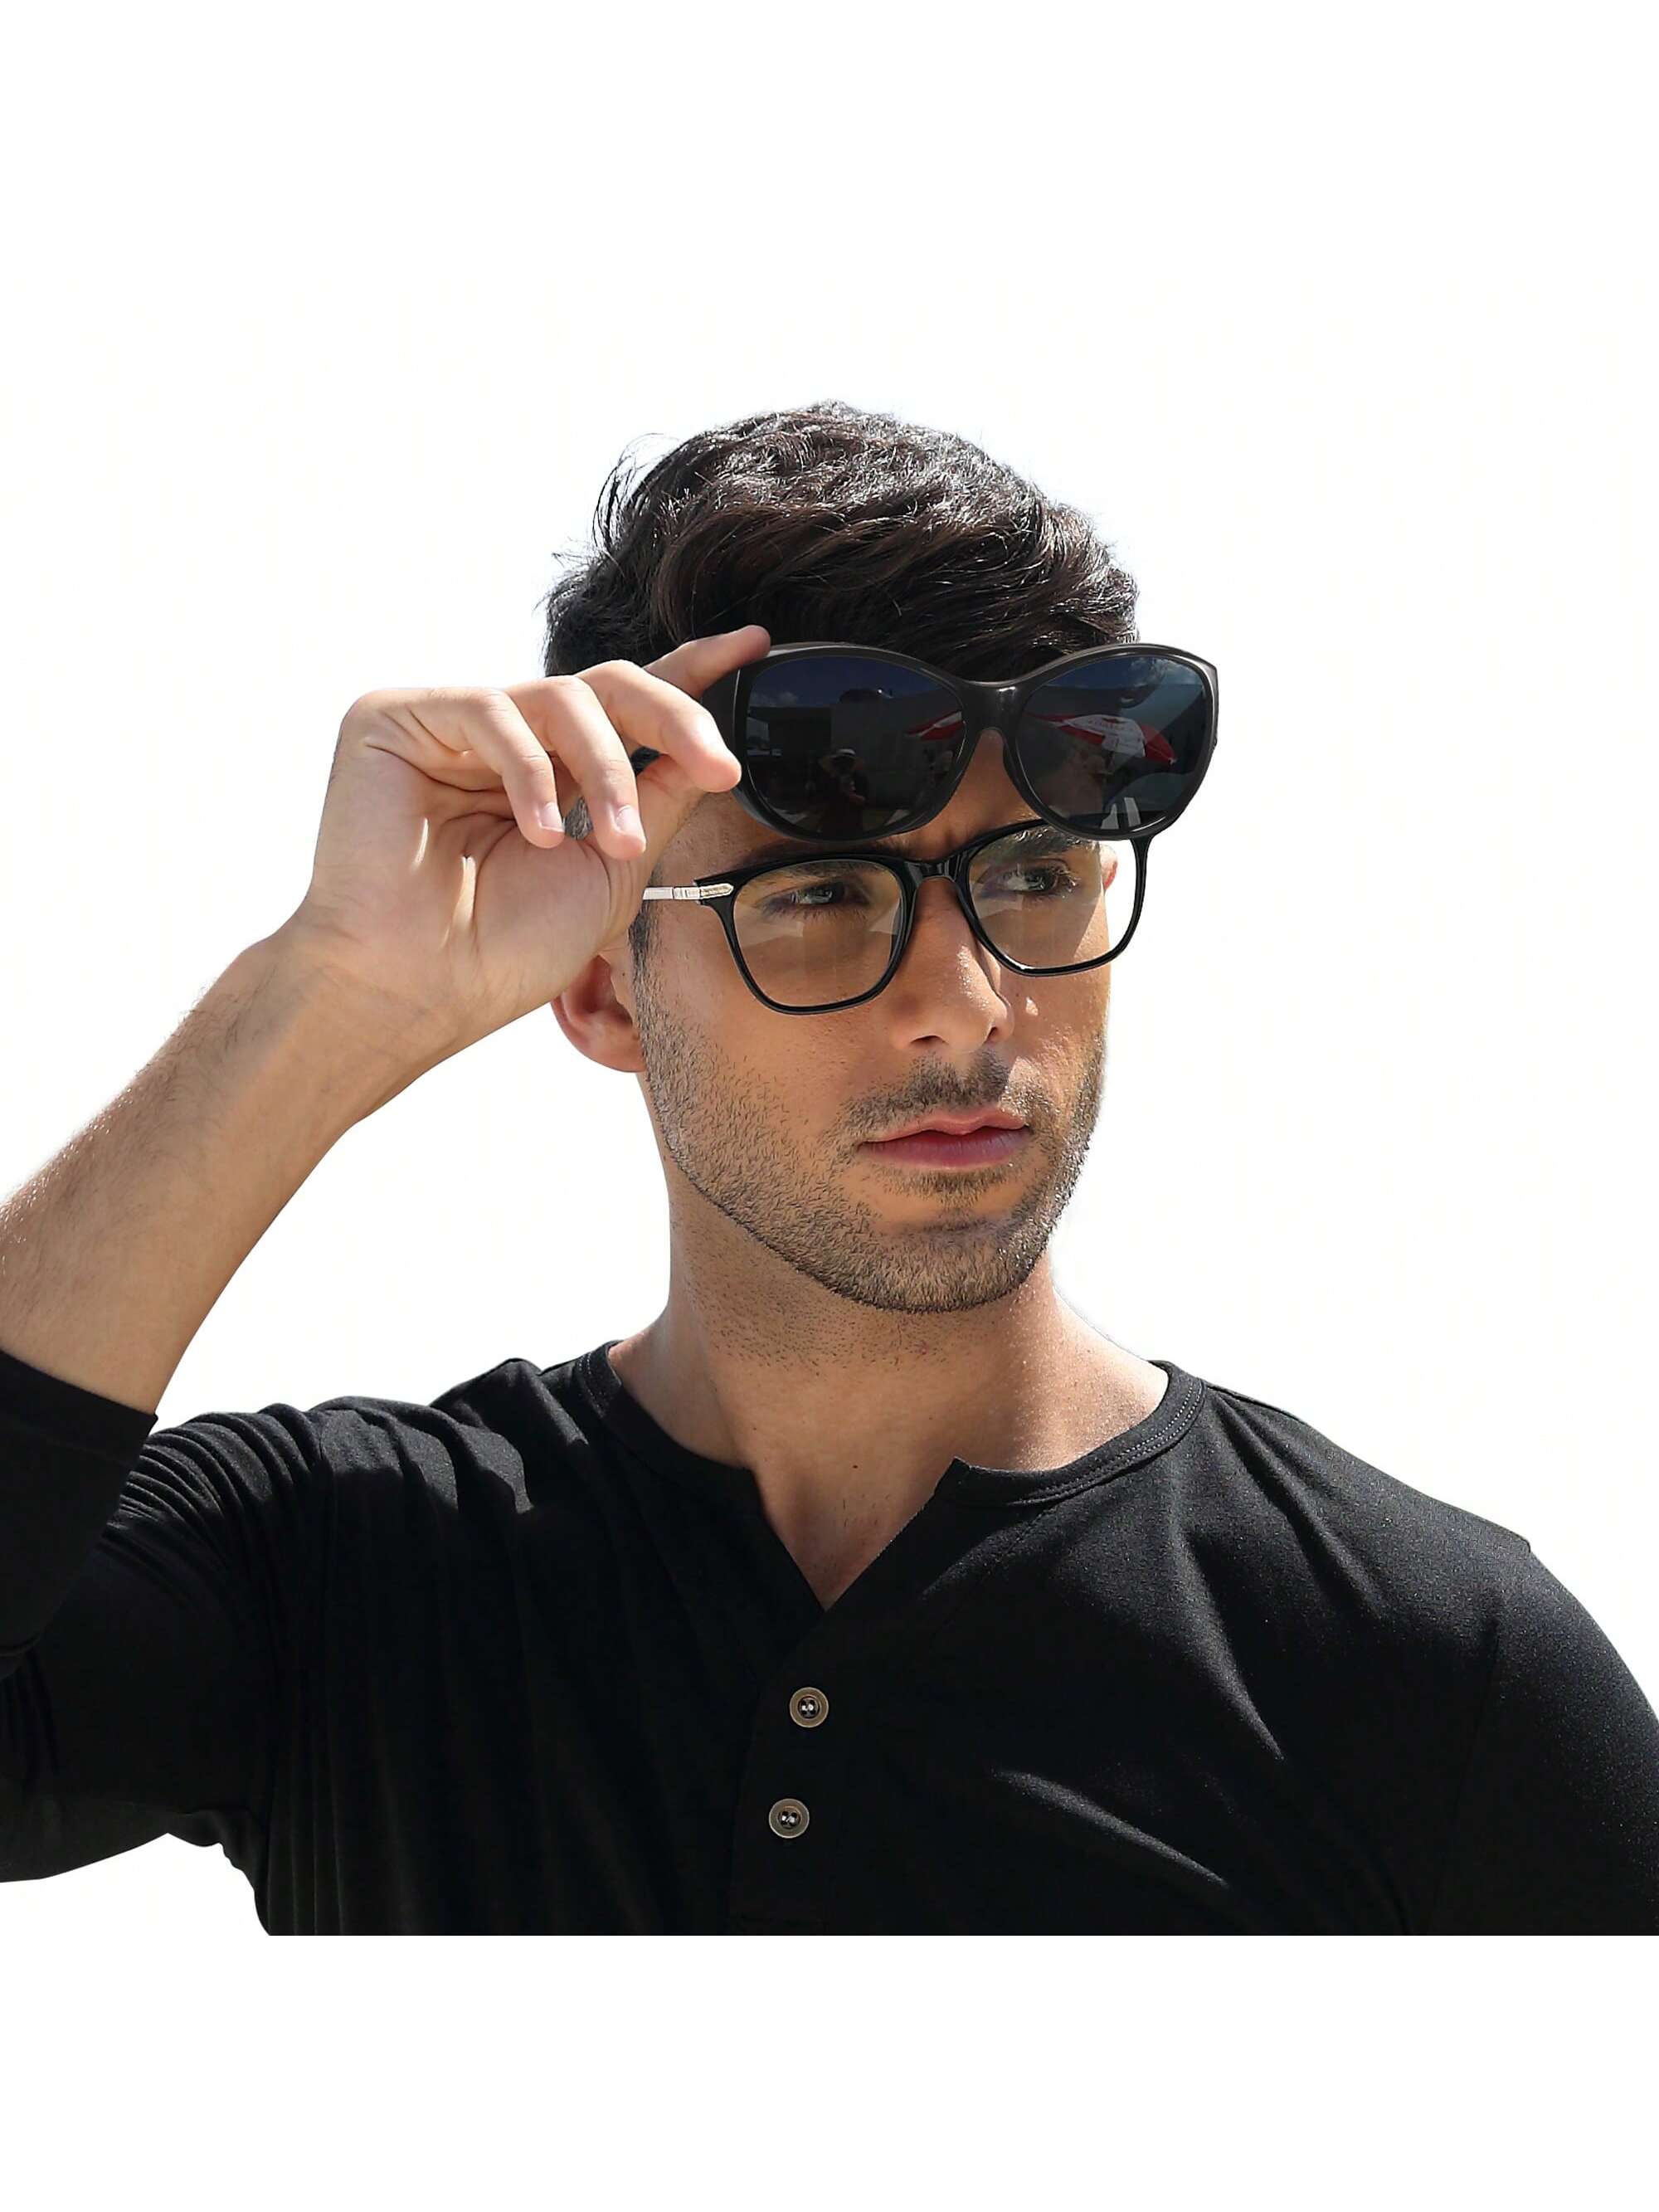 LVIOE 1 пара поляризованных солнцезащитных очков для женщин и мужчин разоблачение поляризованных солнцезащитных очков blenders eyewear цвет future ruler pol